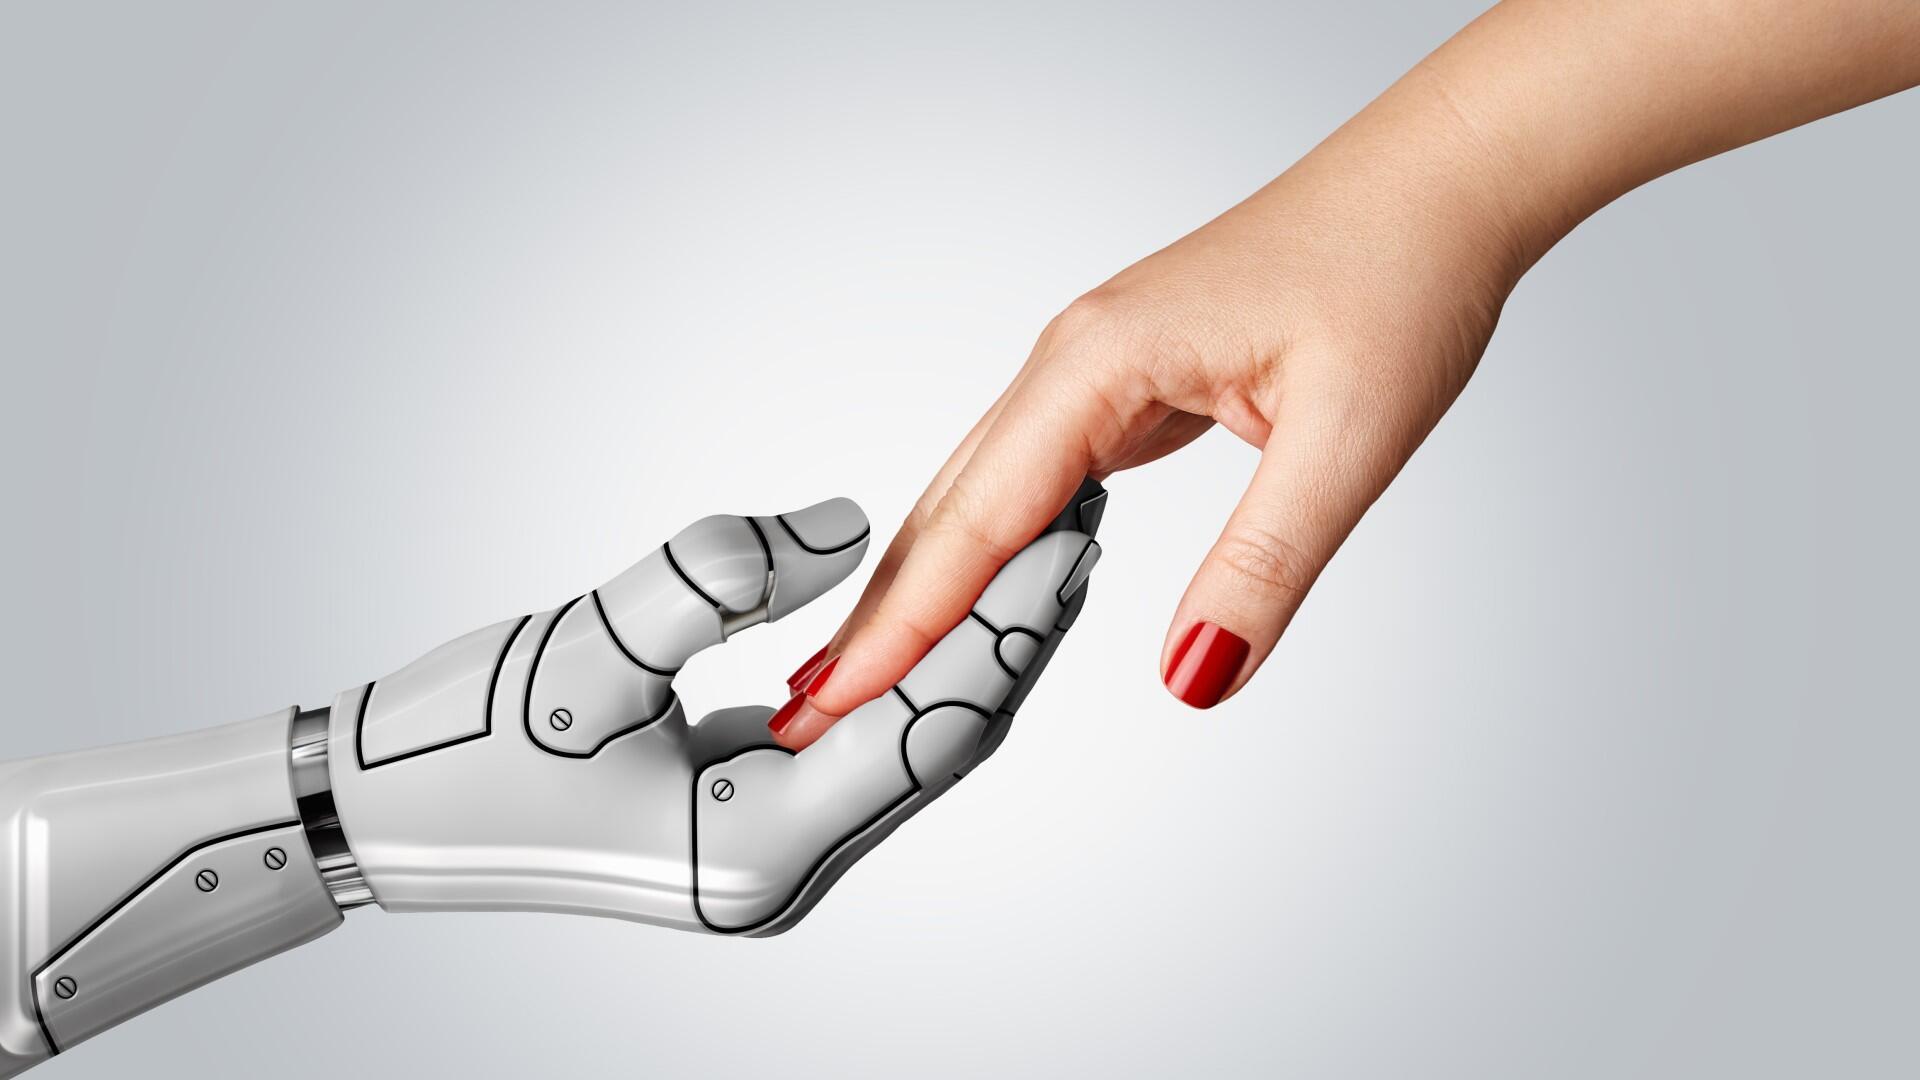 Robot hand touching a human hand